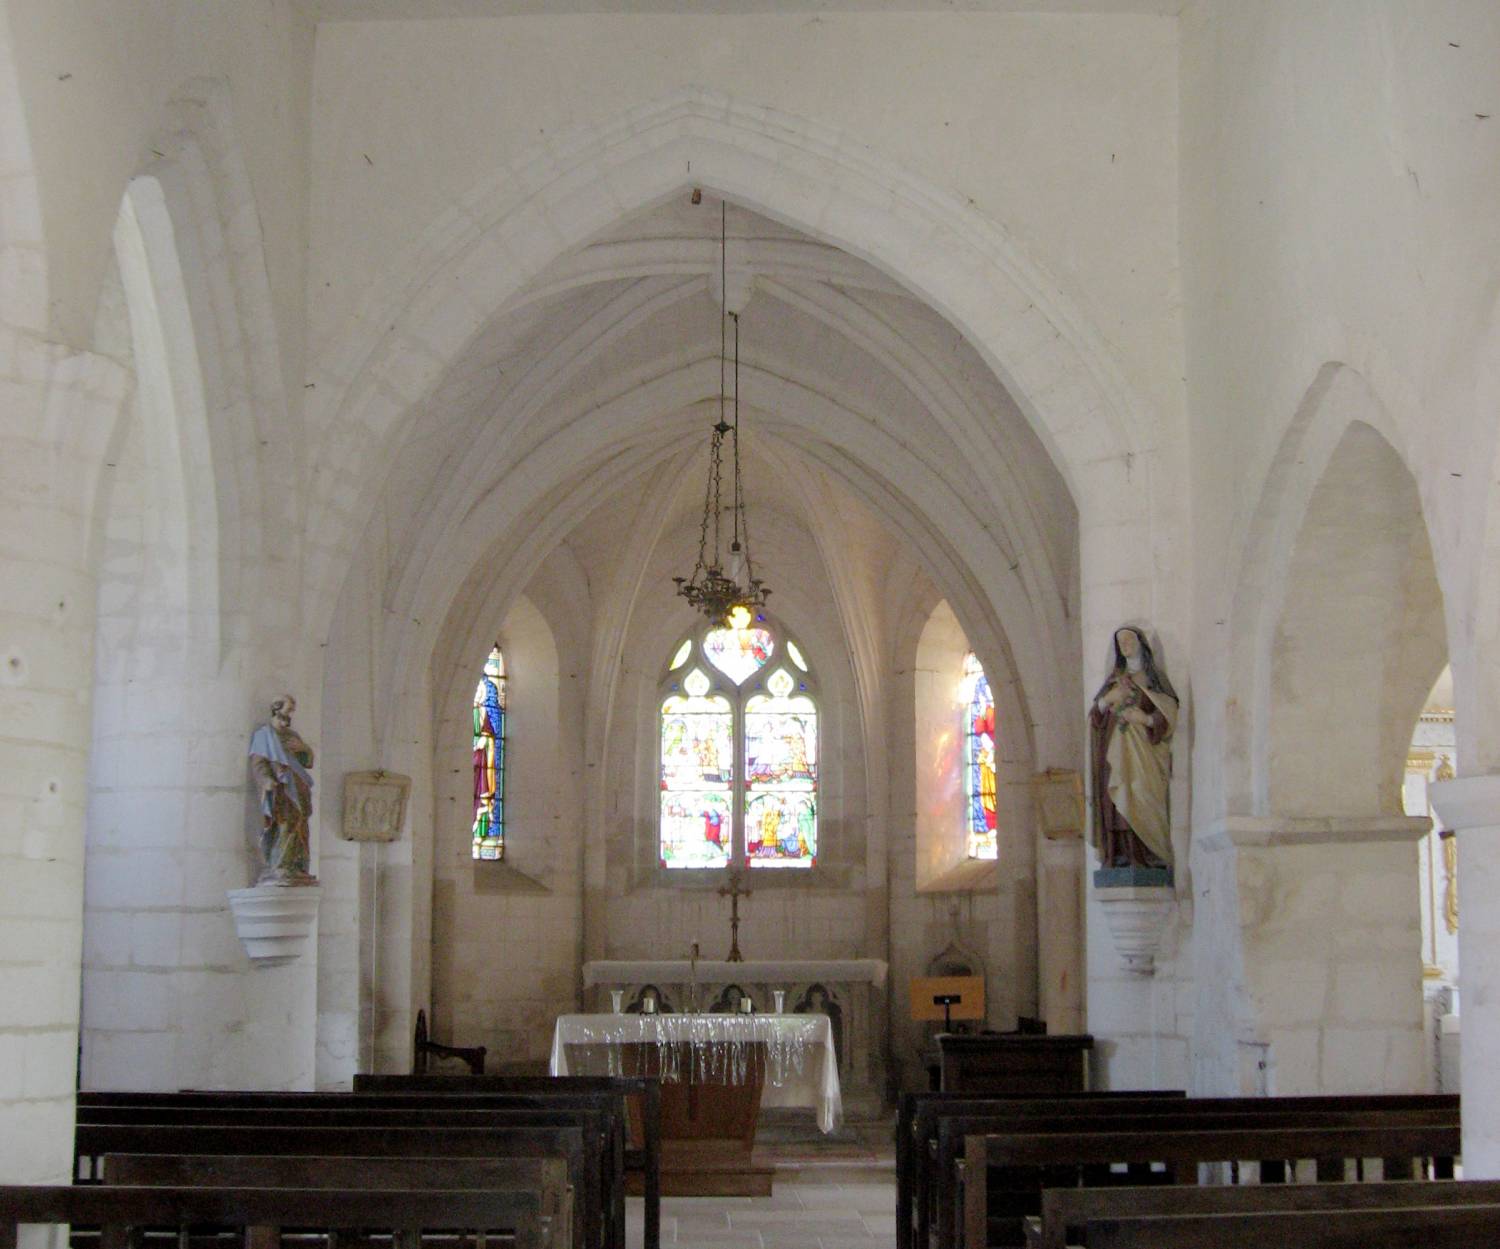 Villette-sur-Aube (10) - église Saint-Pierre - La Sauvegarde de l'Art Français